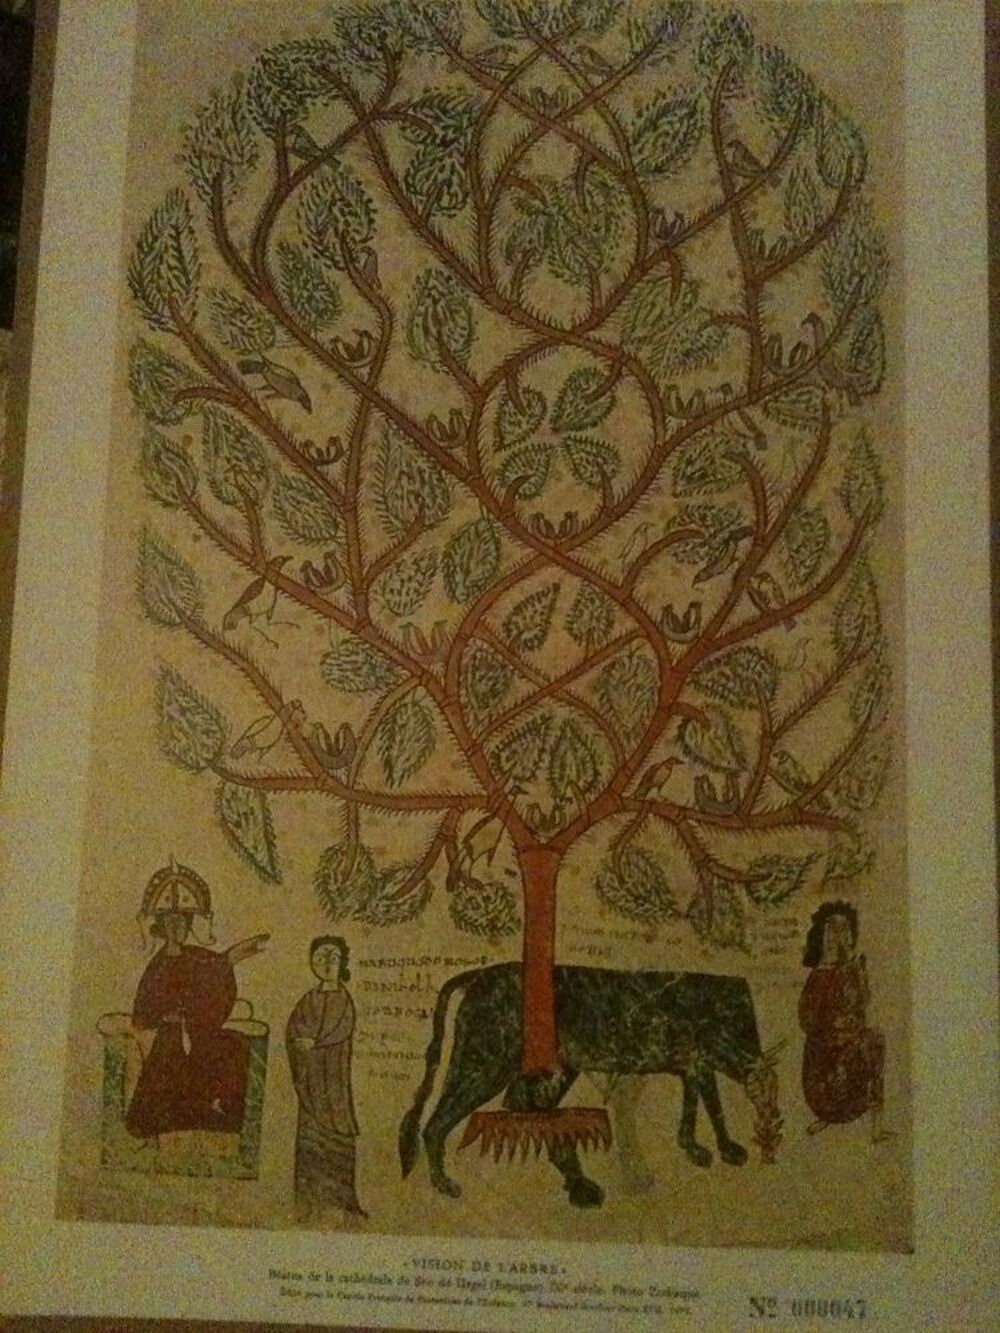 Photographie lithographie gravure Vision de l'arbre, Beatus 